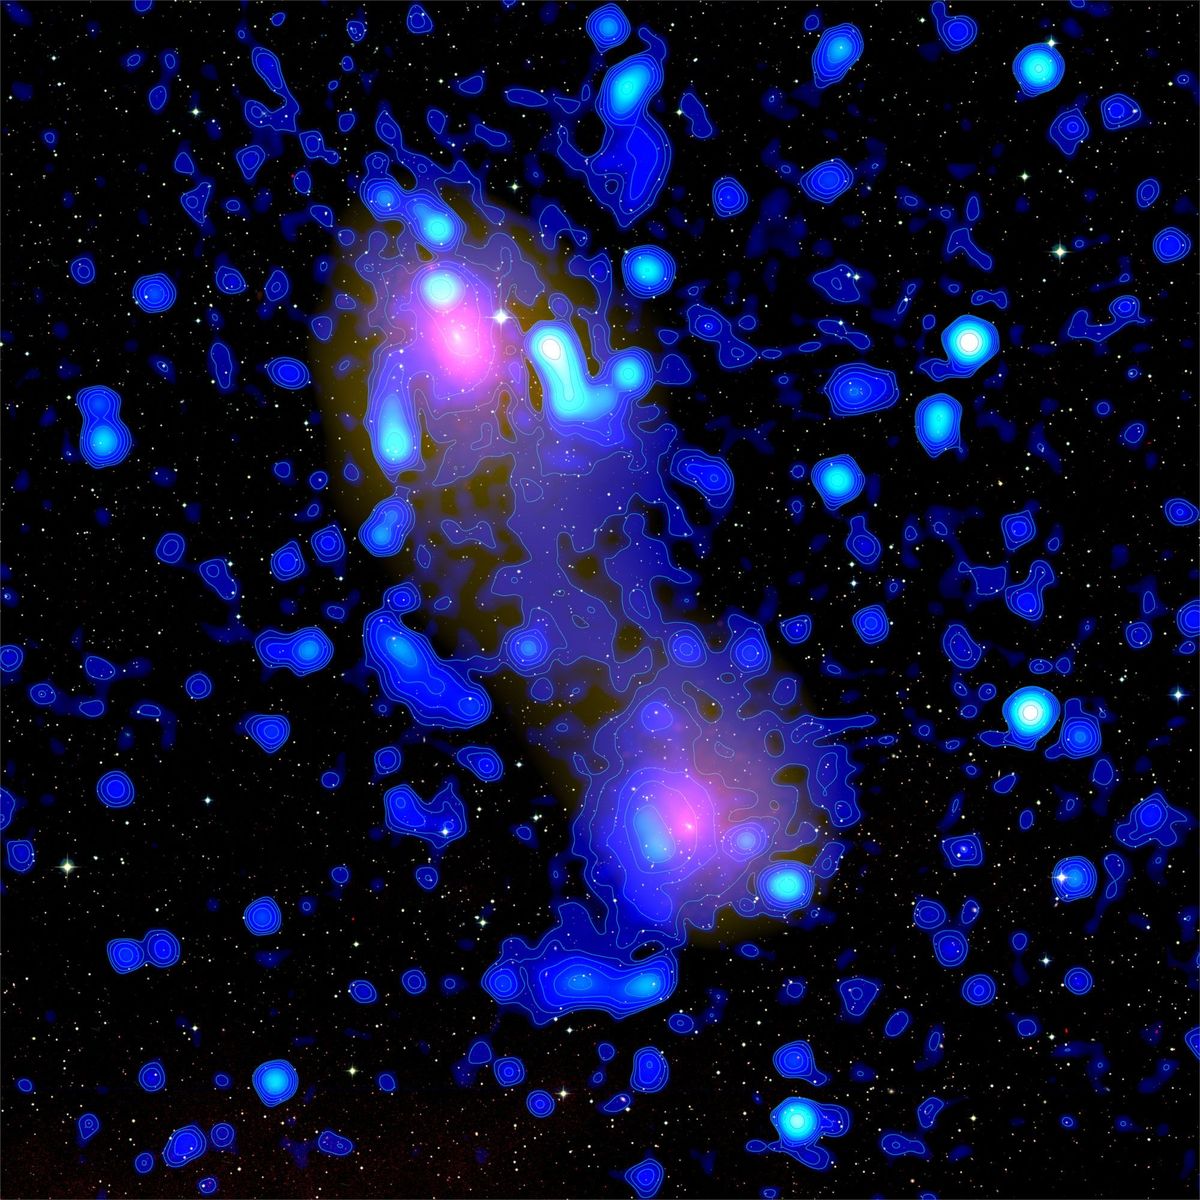 Op deze samengestelde opname zijn de sterrenstelselclusters Abell 0399 en Abell 0401 te zien In deze clusters bevindt zich een enorme hoeveelheid plasma met een zeer hoge temperatuur dat rntgenstraling uitzendt rood De microgolfgegevens van de Plancksatelliet tonen een vage nevel van materie tussen de twee clusters geel terwijl de gegevens van de LOFARradiotelescoop de brug van radiostraling blauw laten zien die uit de nevel komt naast enkele van de specifieke sterrenstelsels waaruit de clusters bestaan